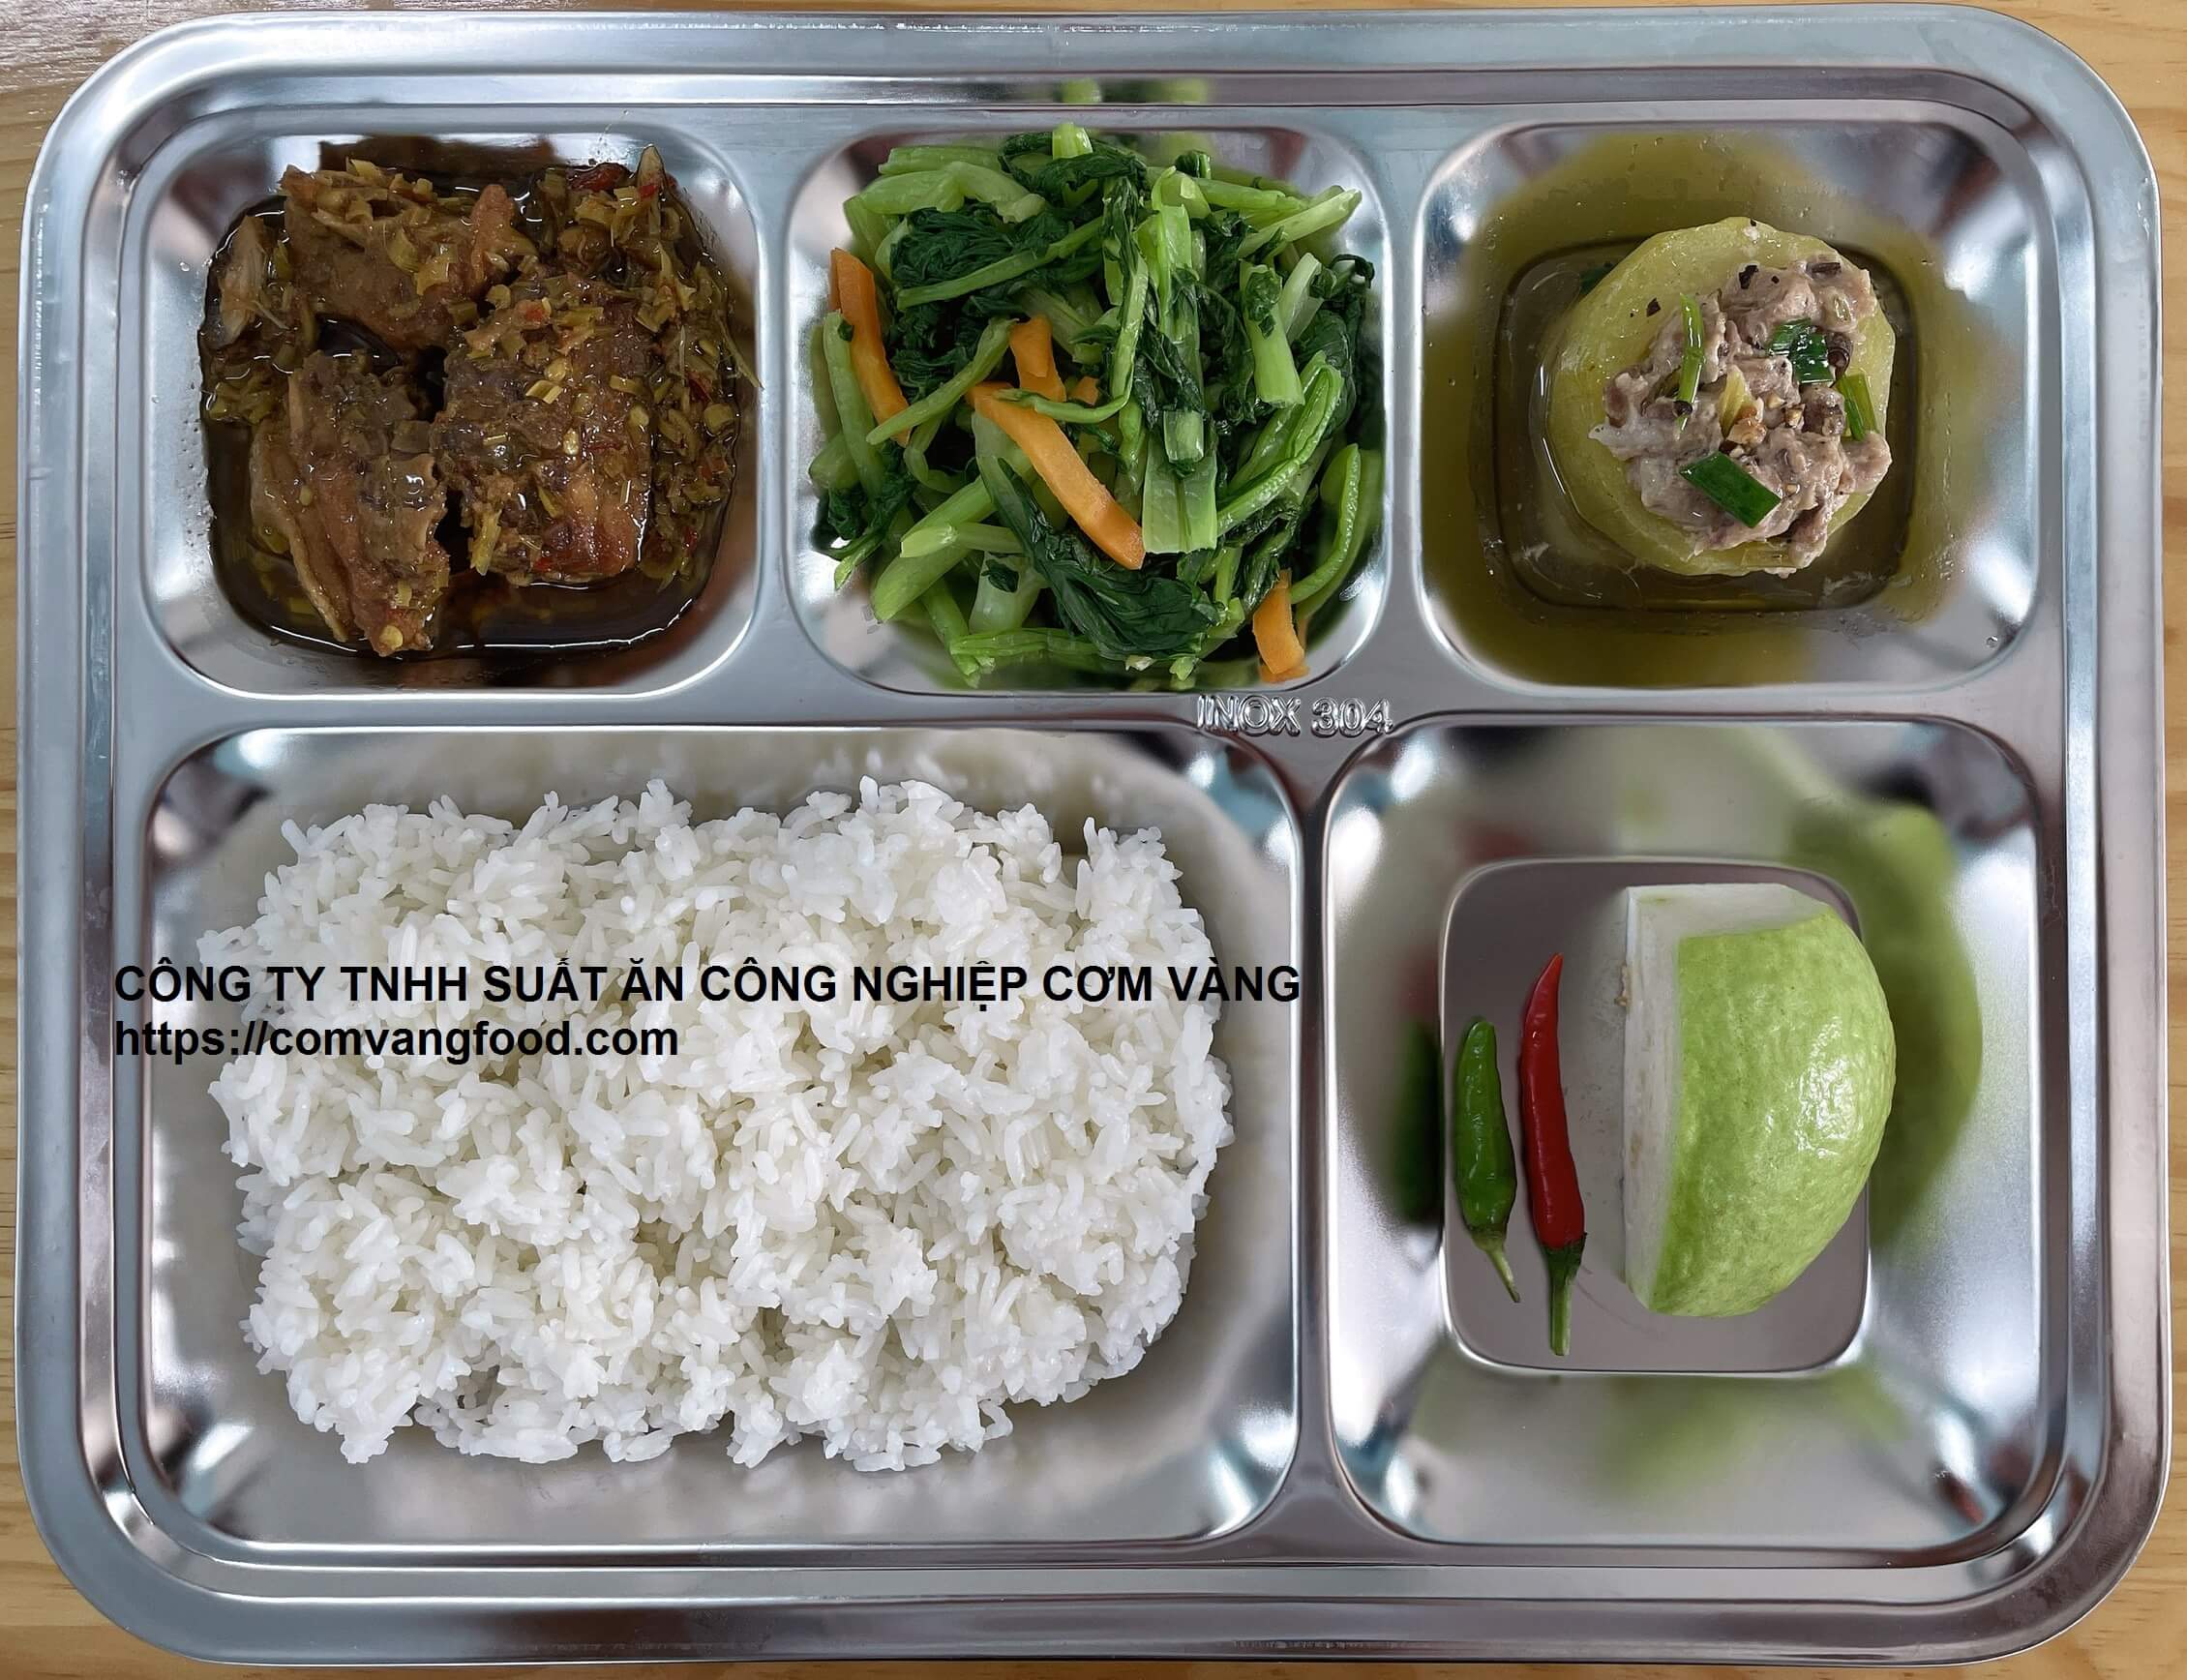 Suất ăn CN giá 23.000 ở Đồng Nai